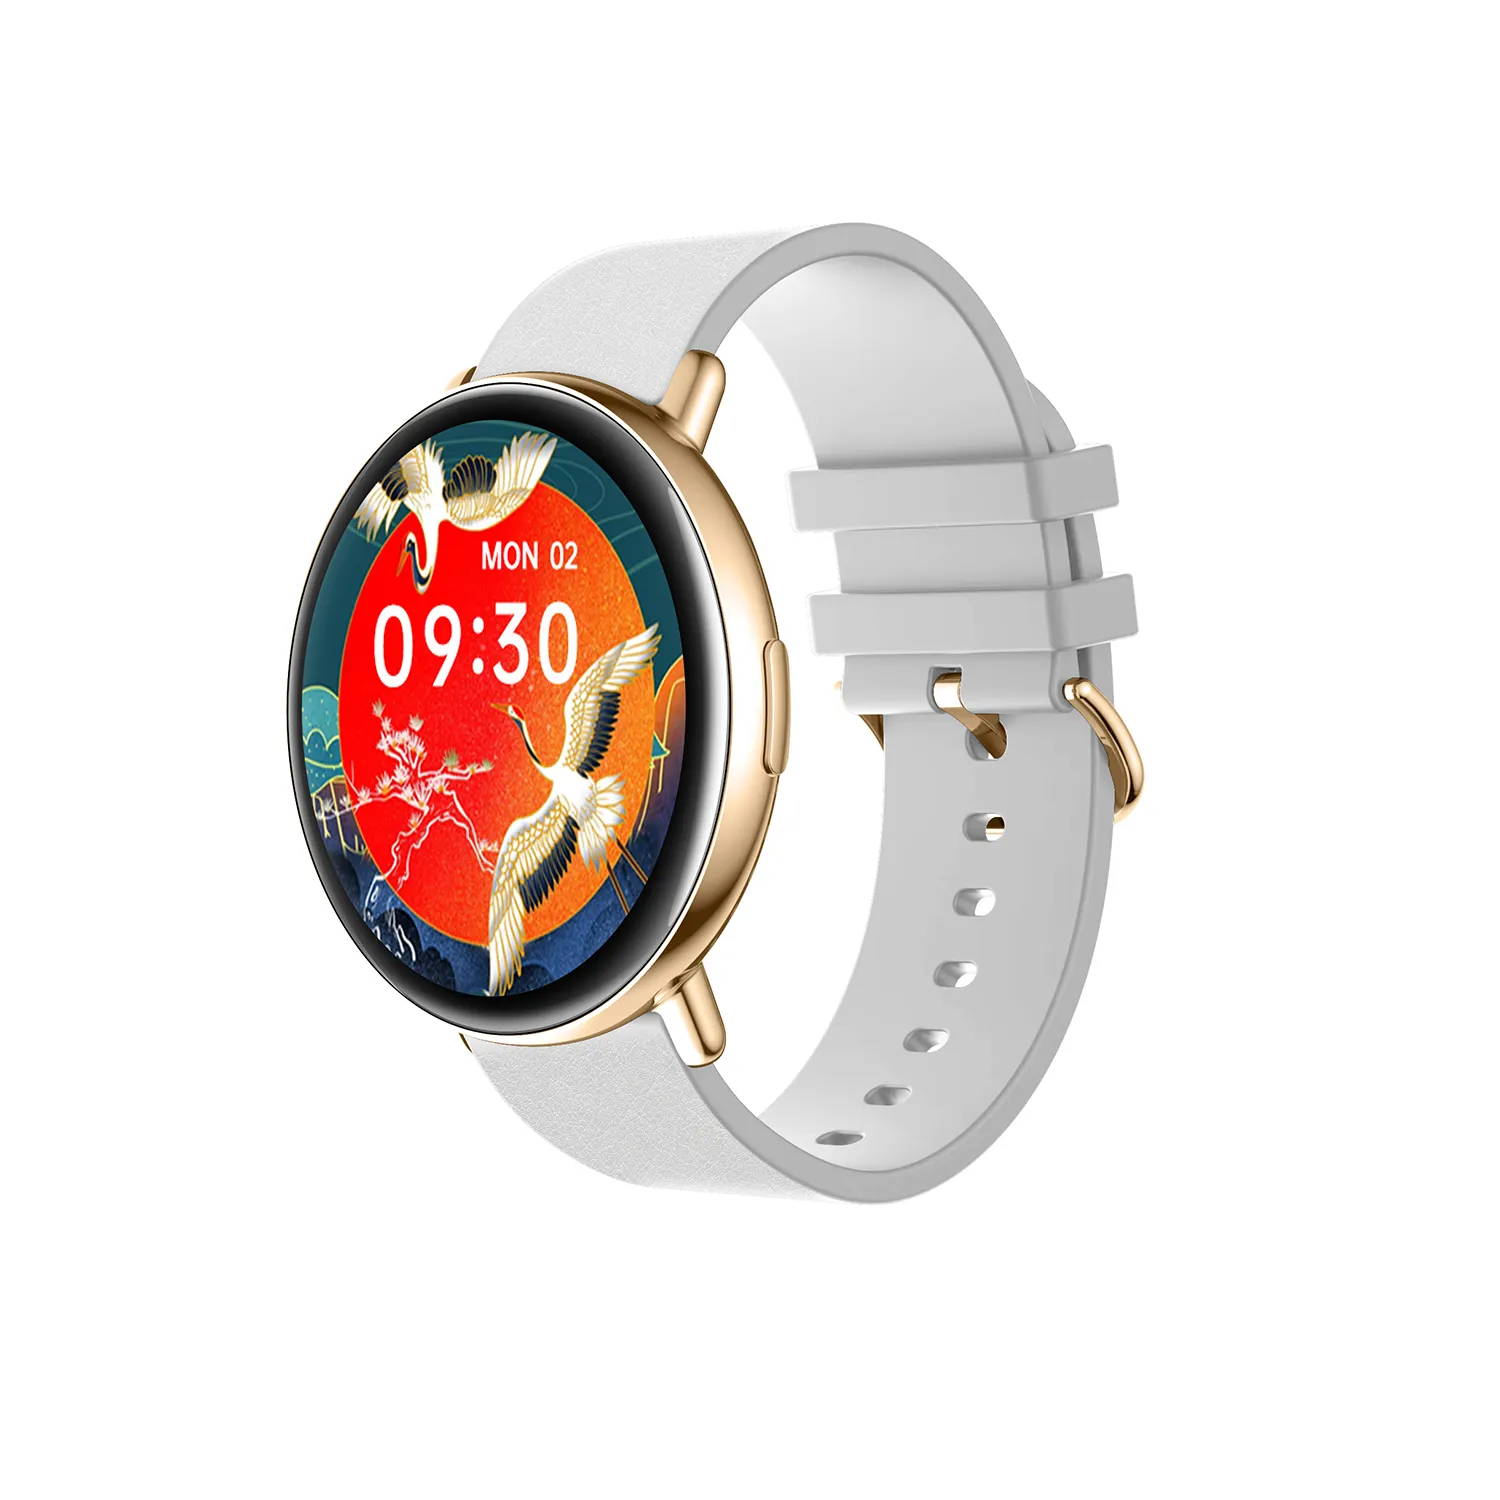 Hoge Kwaliteit Oem Aangepaste Hd Groot Scherm Hartslagmeter Smart Horloges Nieuwkomers 2021 Smart Horloge Reloj Inteligente